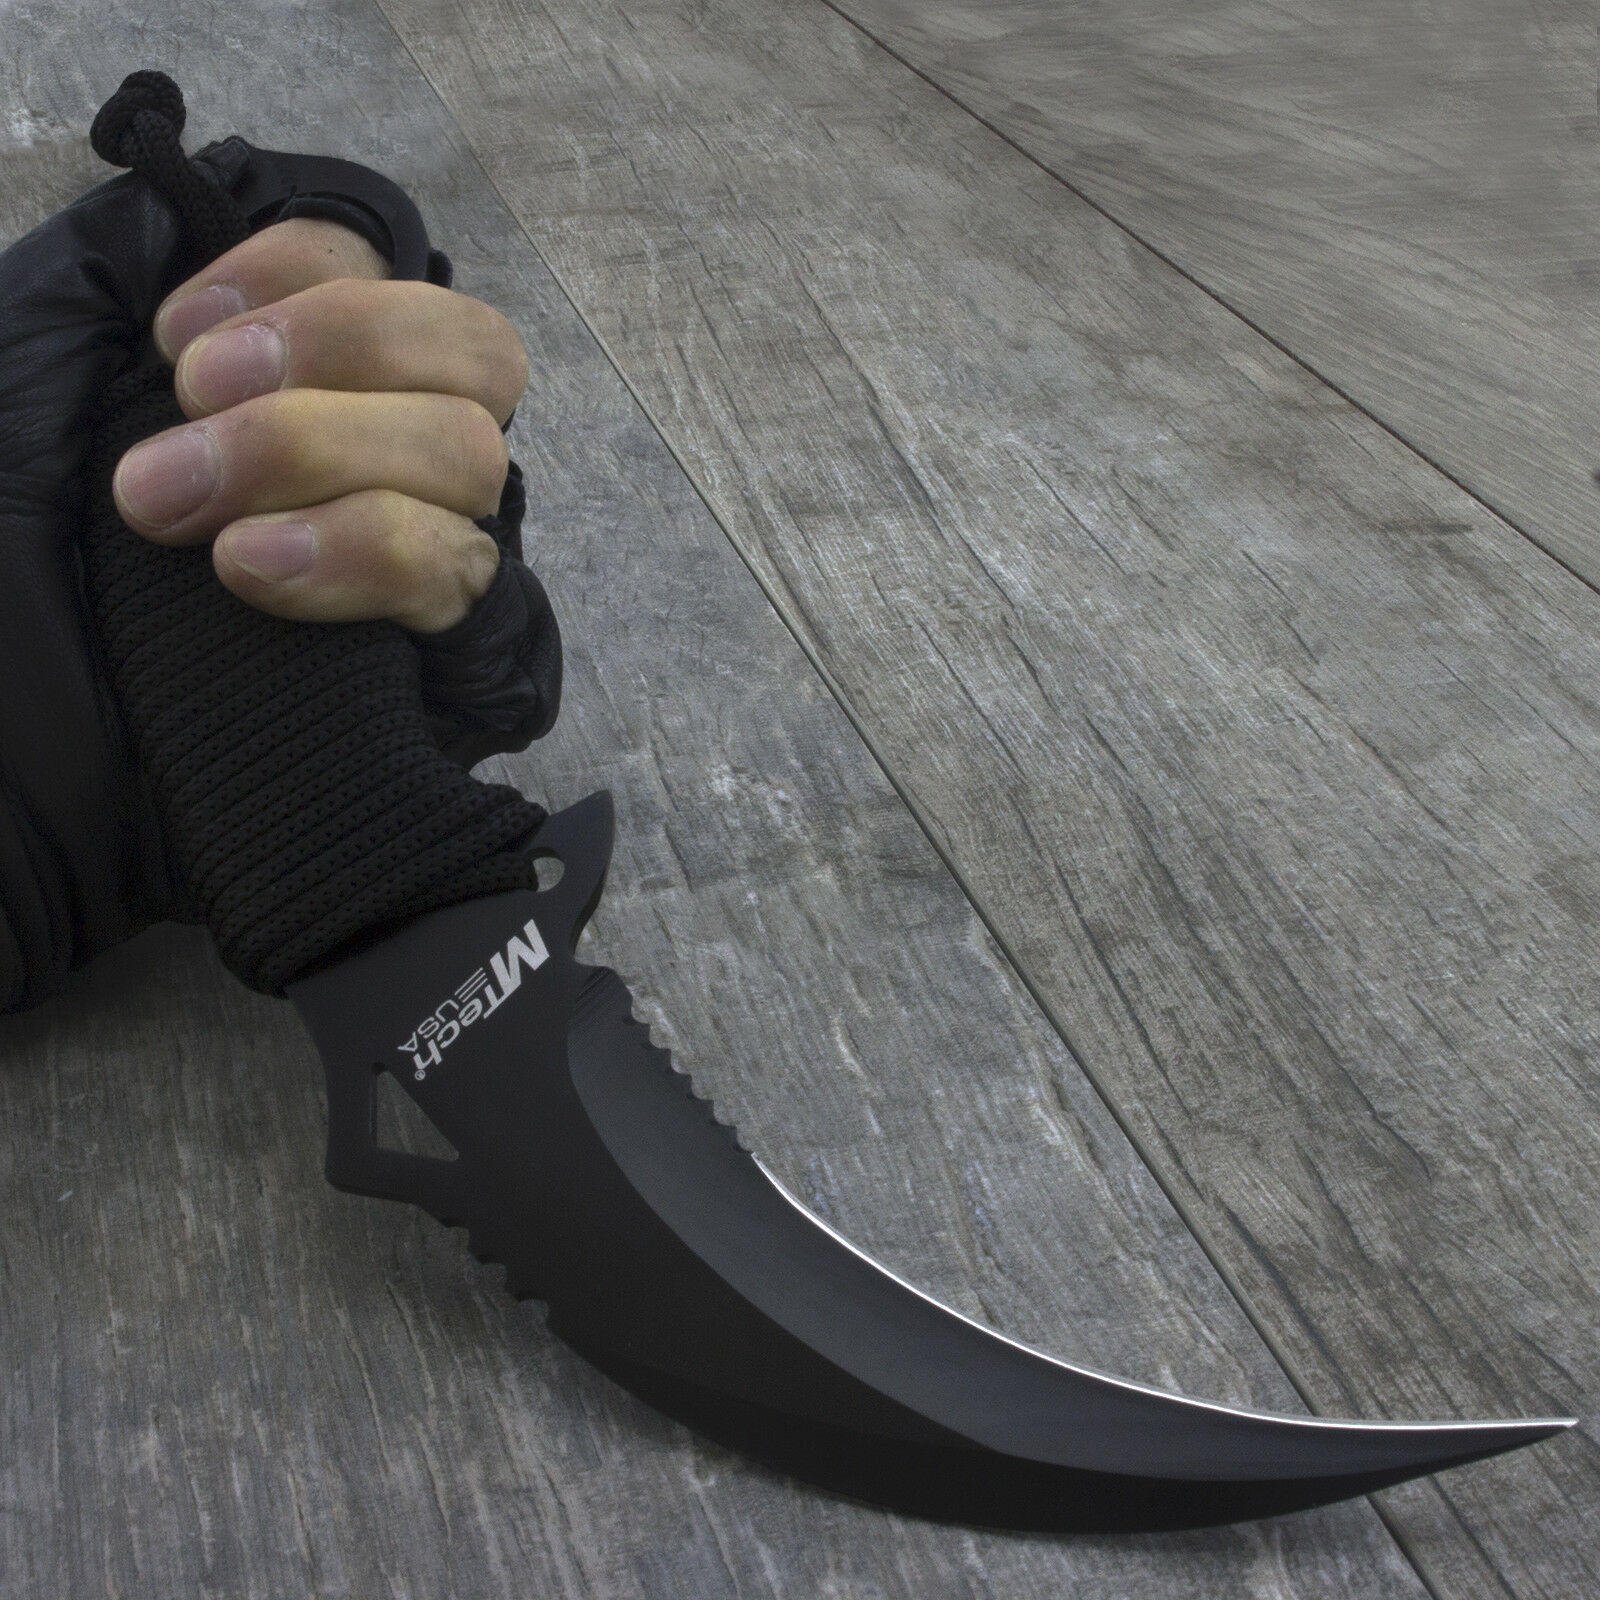 9.85" M-tech Usa Tactical Combat Karambit Fixed Blade Knife Boot Military